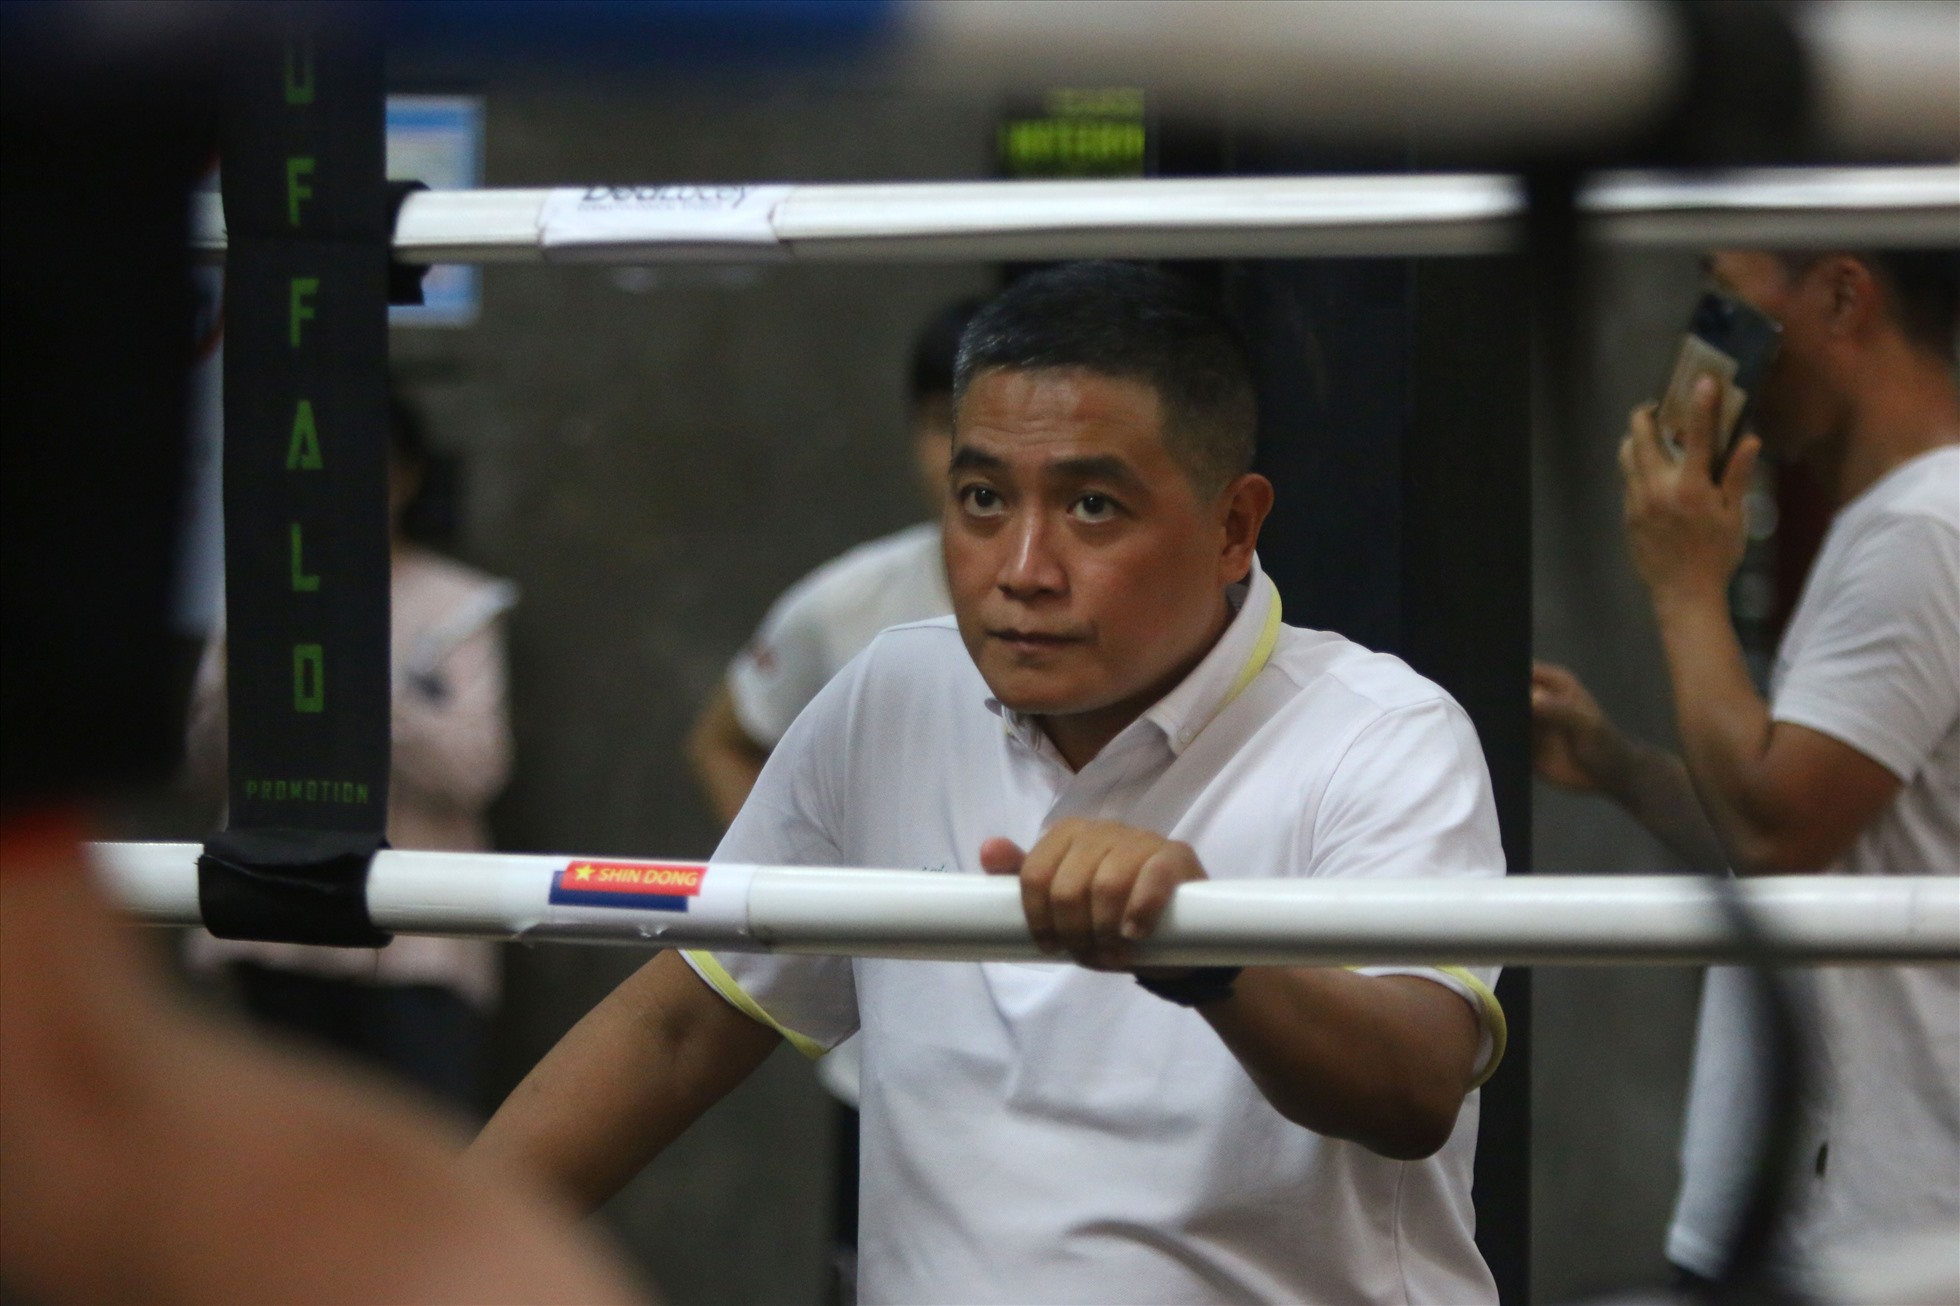 Ông Bùi Cao Nhân, Trưởng bộ môn boxing của Sở Văn hóa - Thể thao TPHCM chăm chú theo dõi các vận động viên địa phương thi đấu giao hữu. Ảnh: Phong Lê